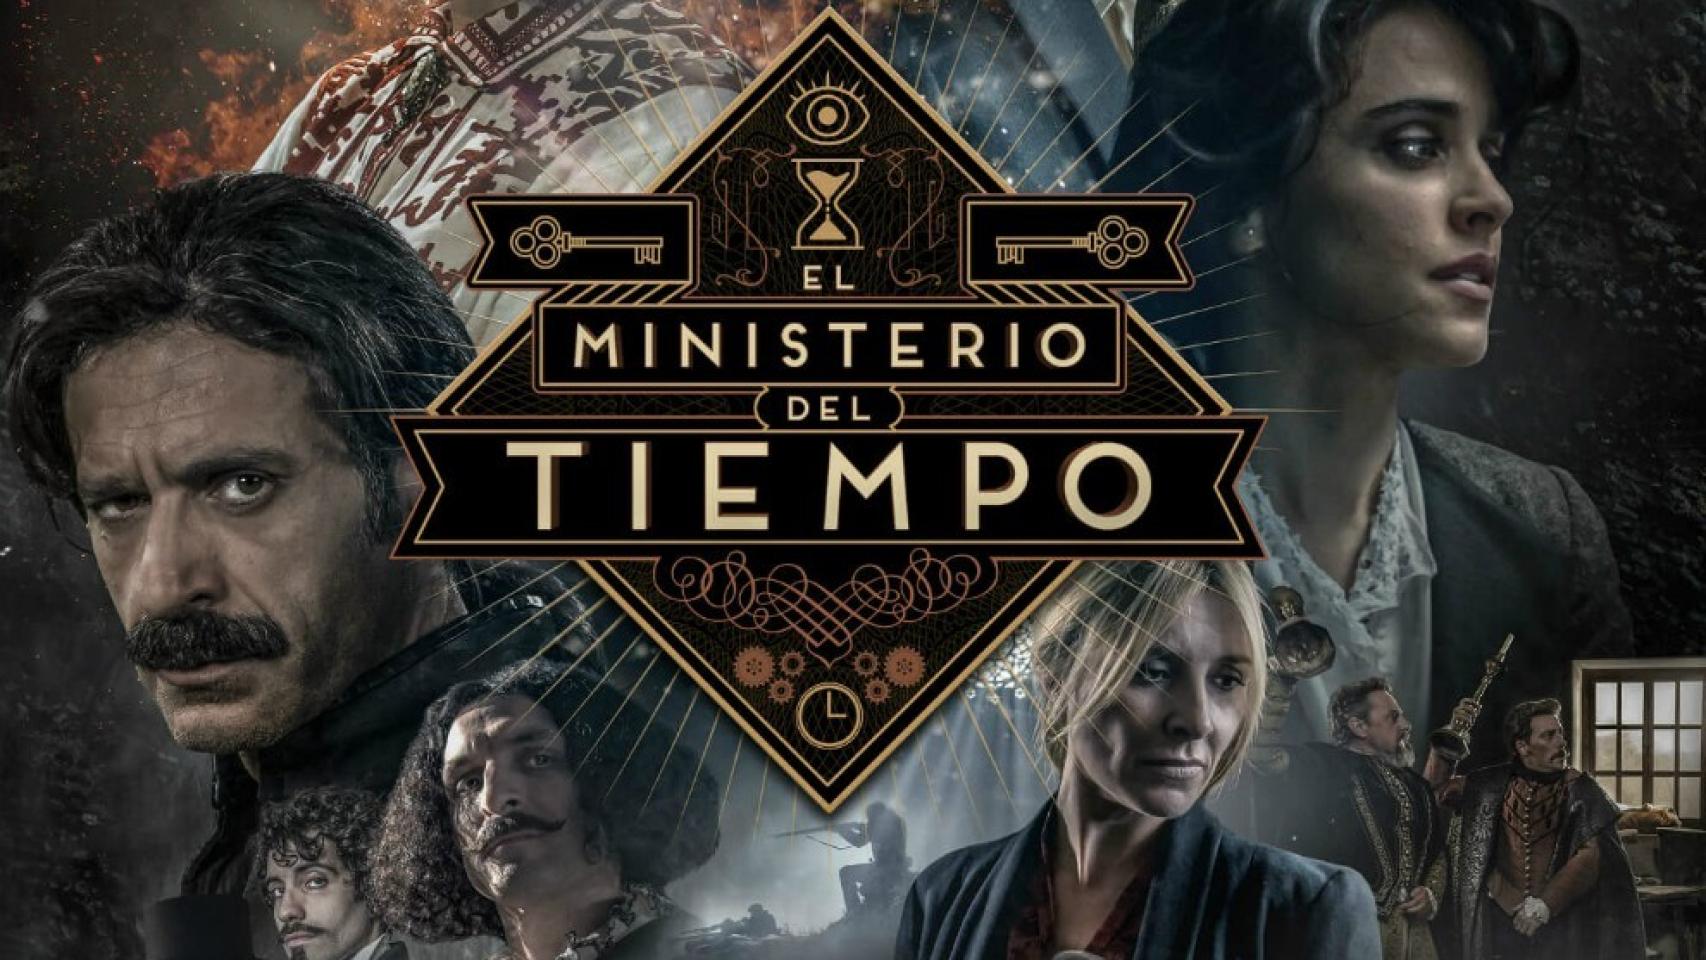 La 1 estrenará la tercera temporada de 'El Ministerio del Tiempo' el 1 de junio